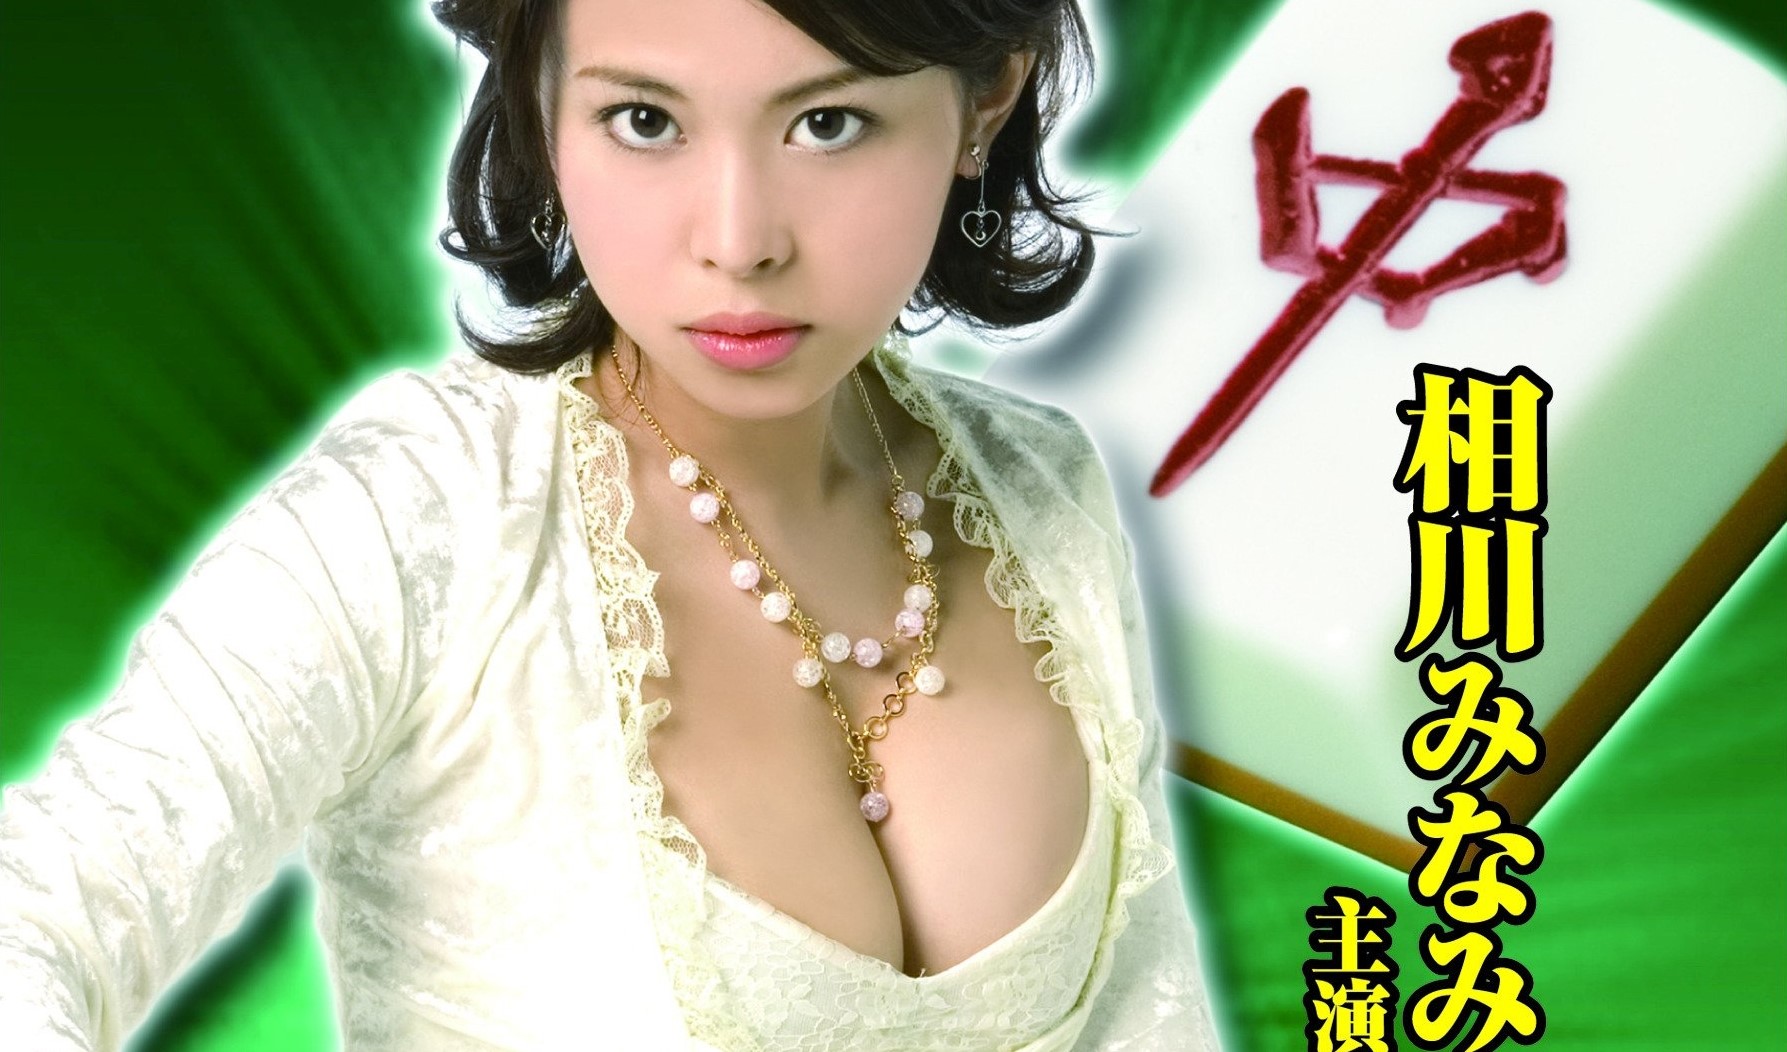 Peng Chang 2008 Japanese 480p HDRip 250MB Download